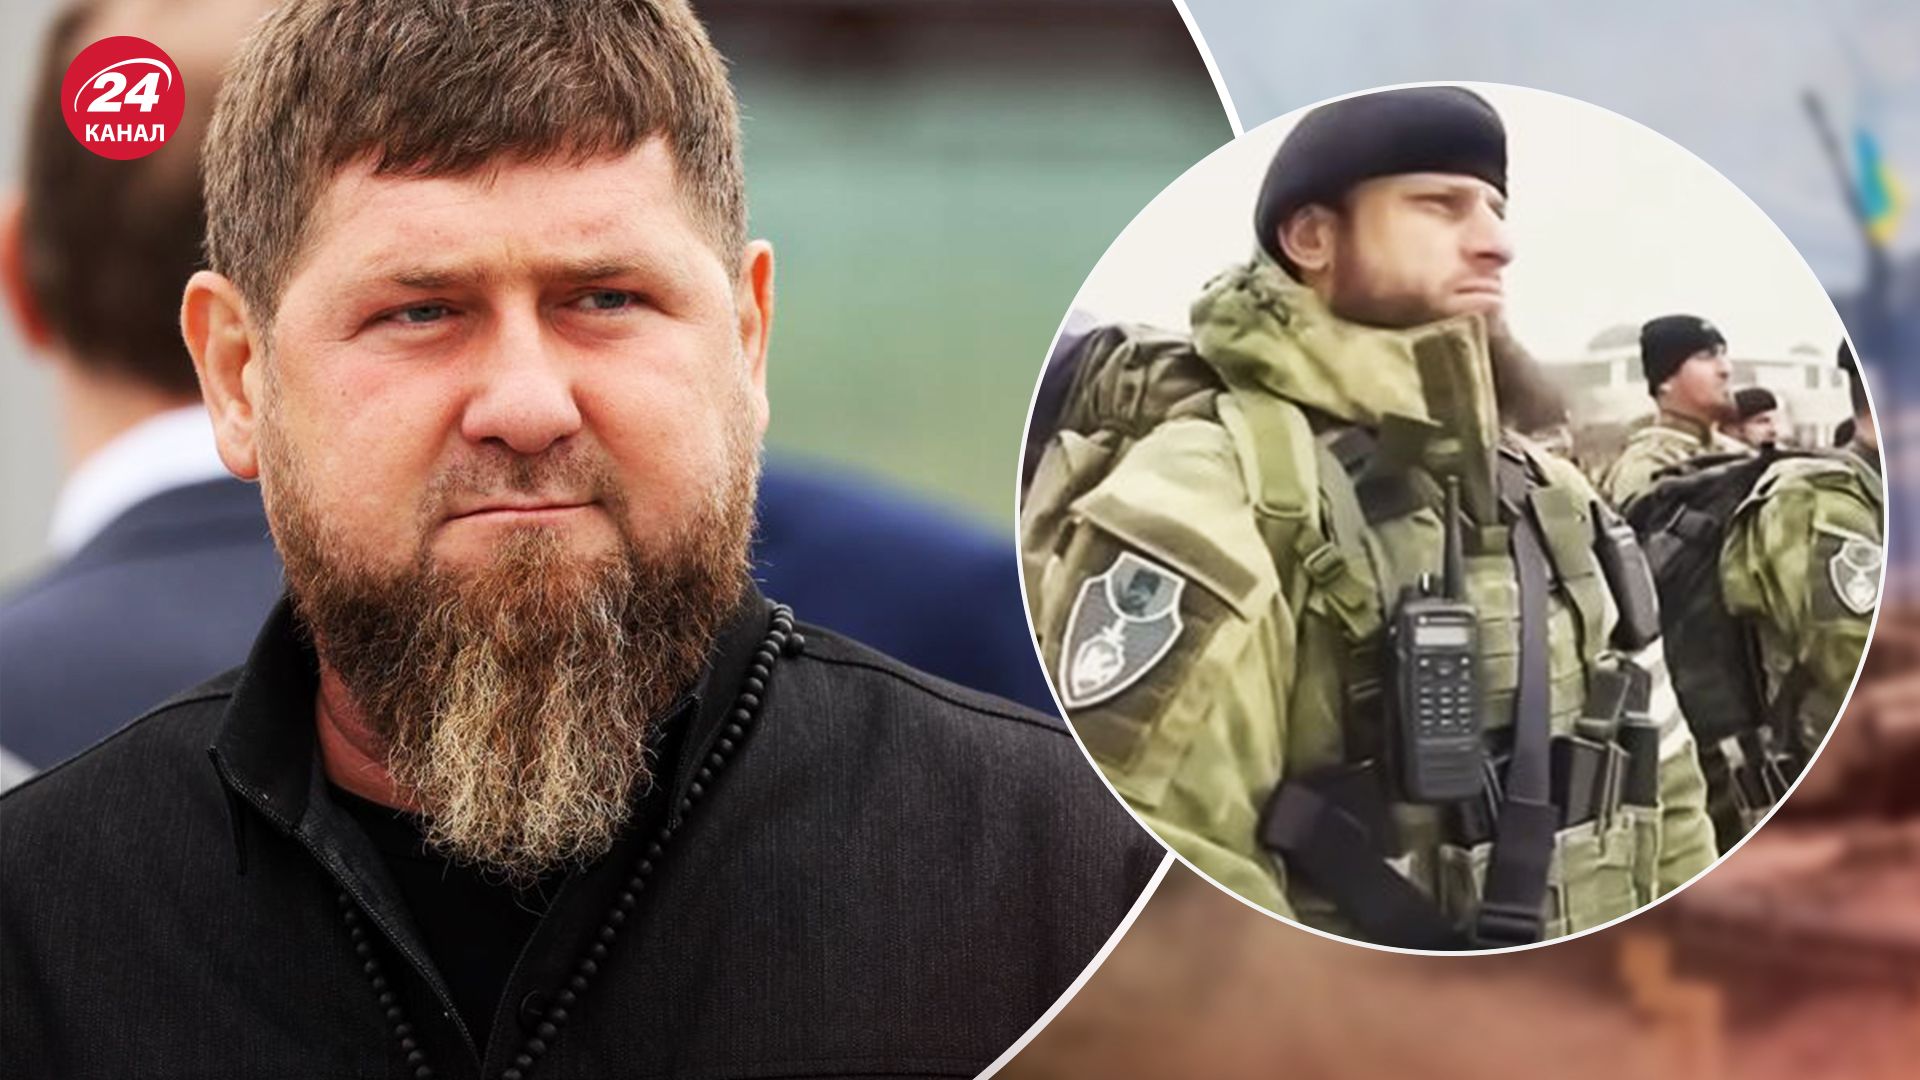 Кадыров заговорил о новом батальоне: зачем создает и чем интересен выбор названия - 24 Канал